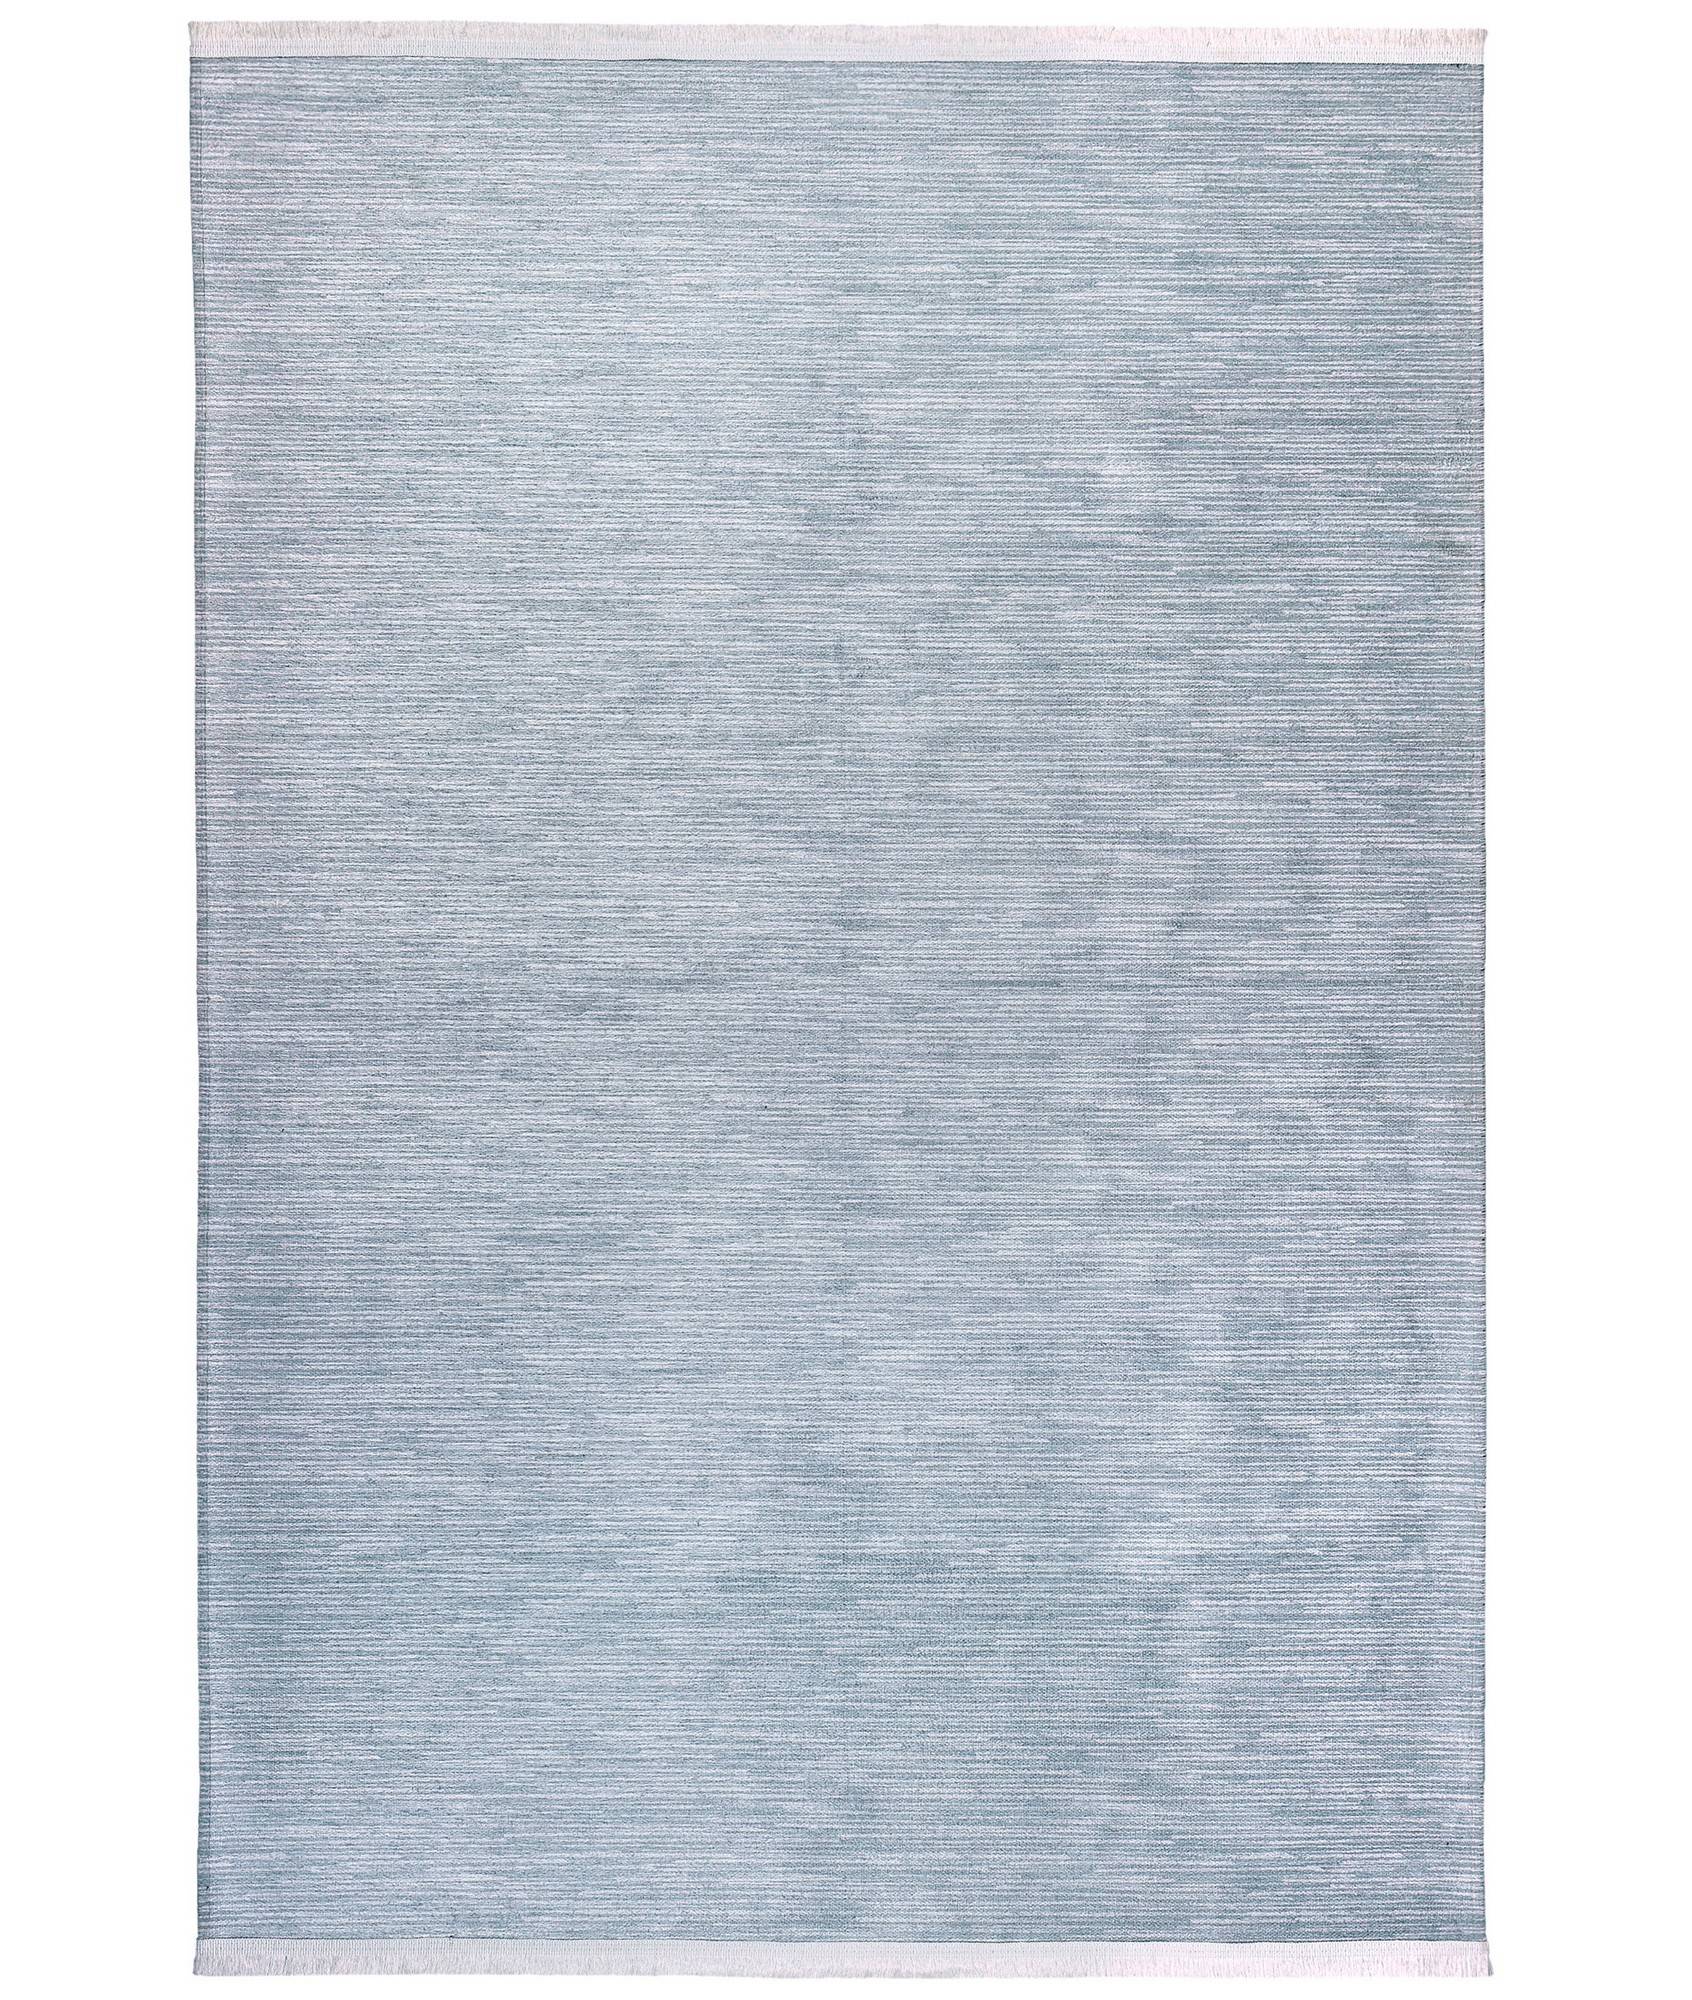 Bohni Teppich 120x180cm 100% Velours Blau und Weiß